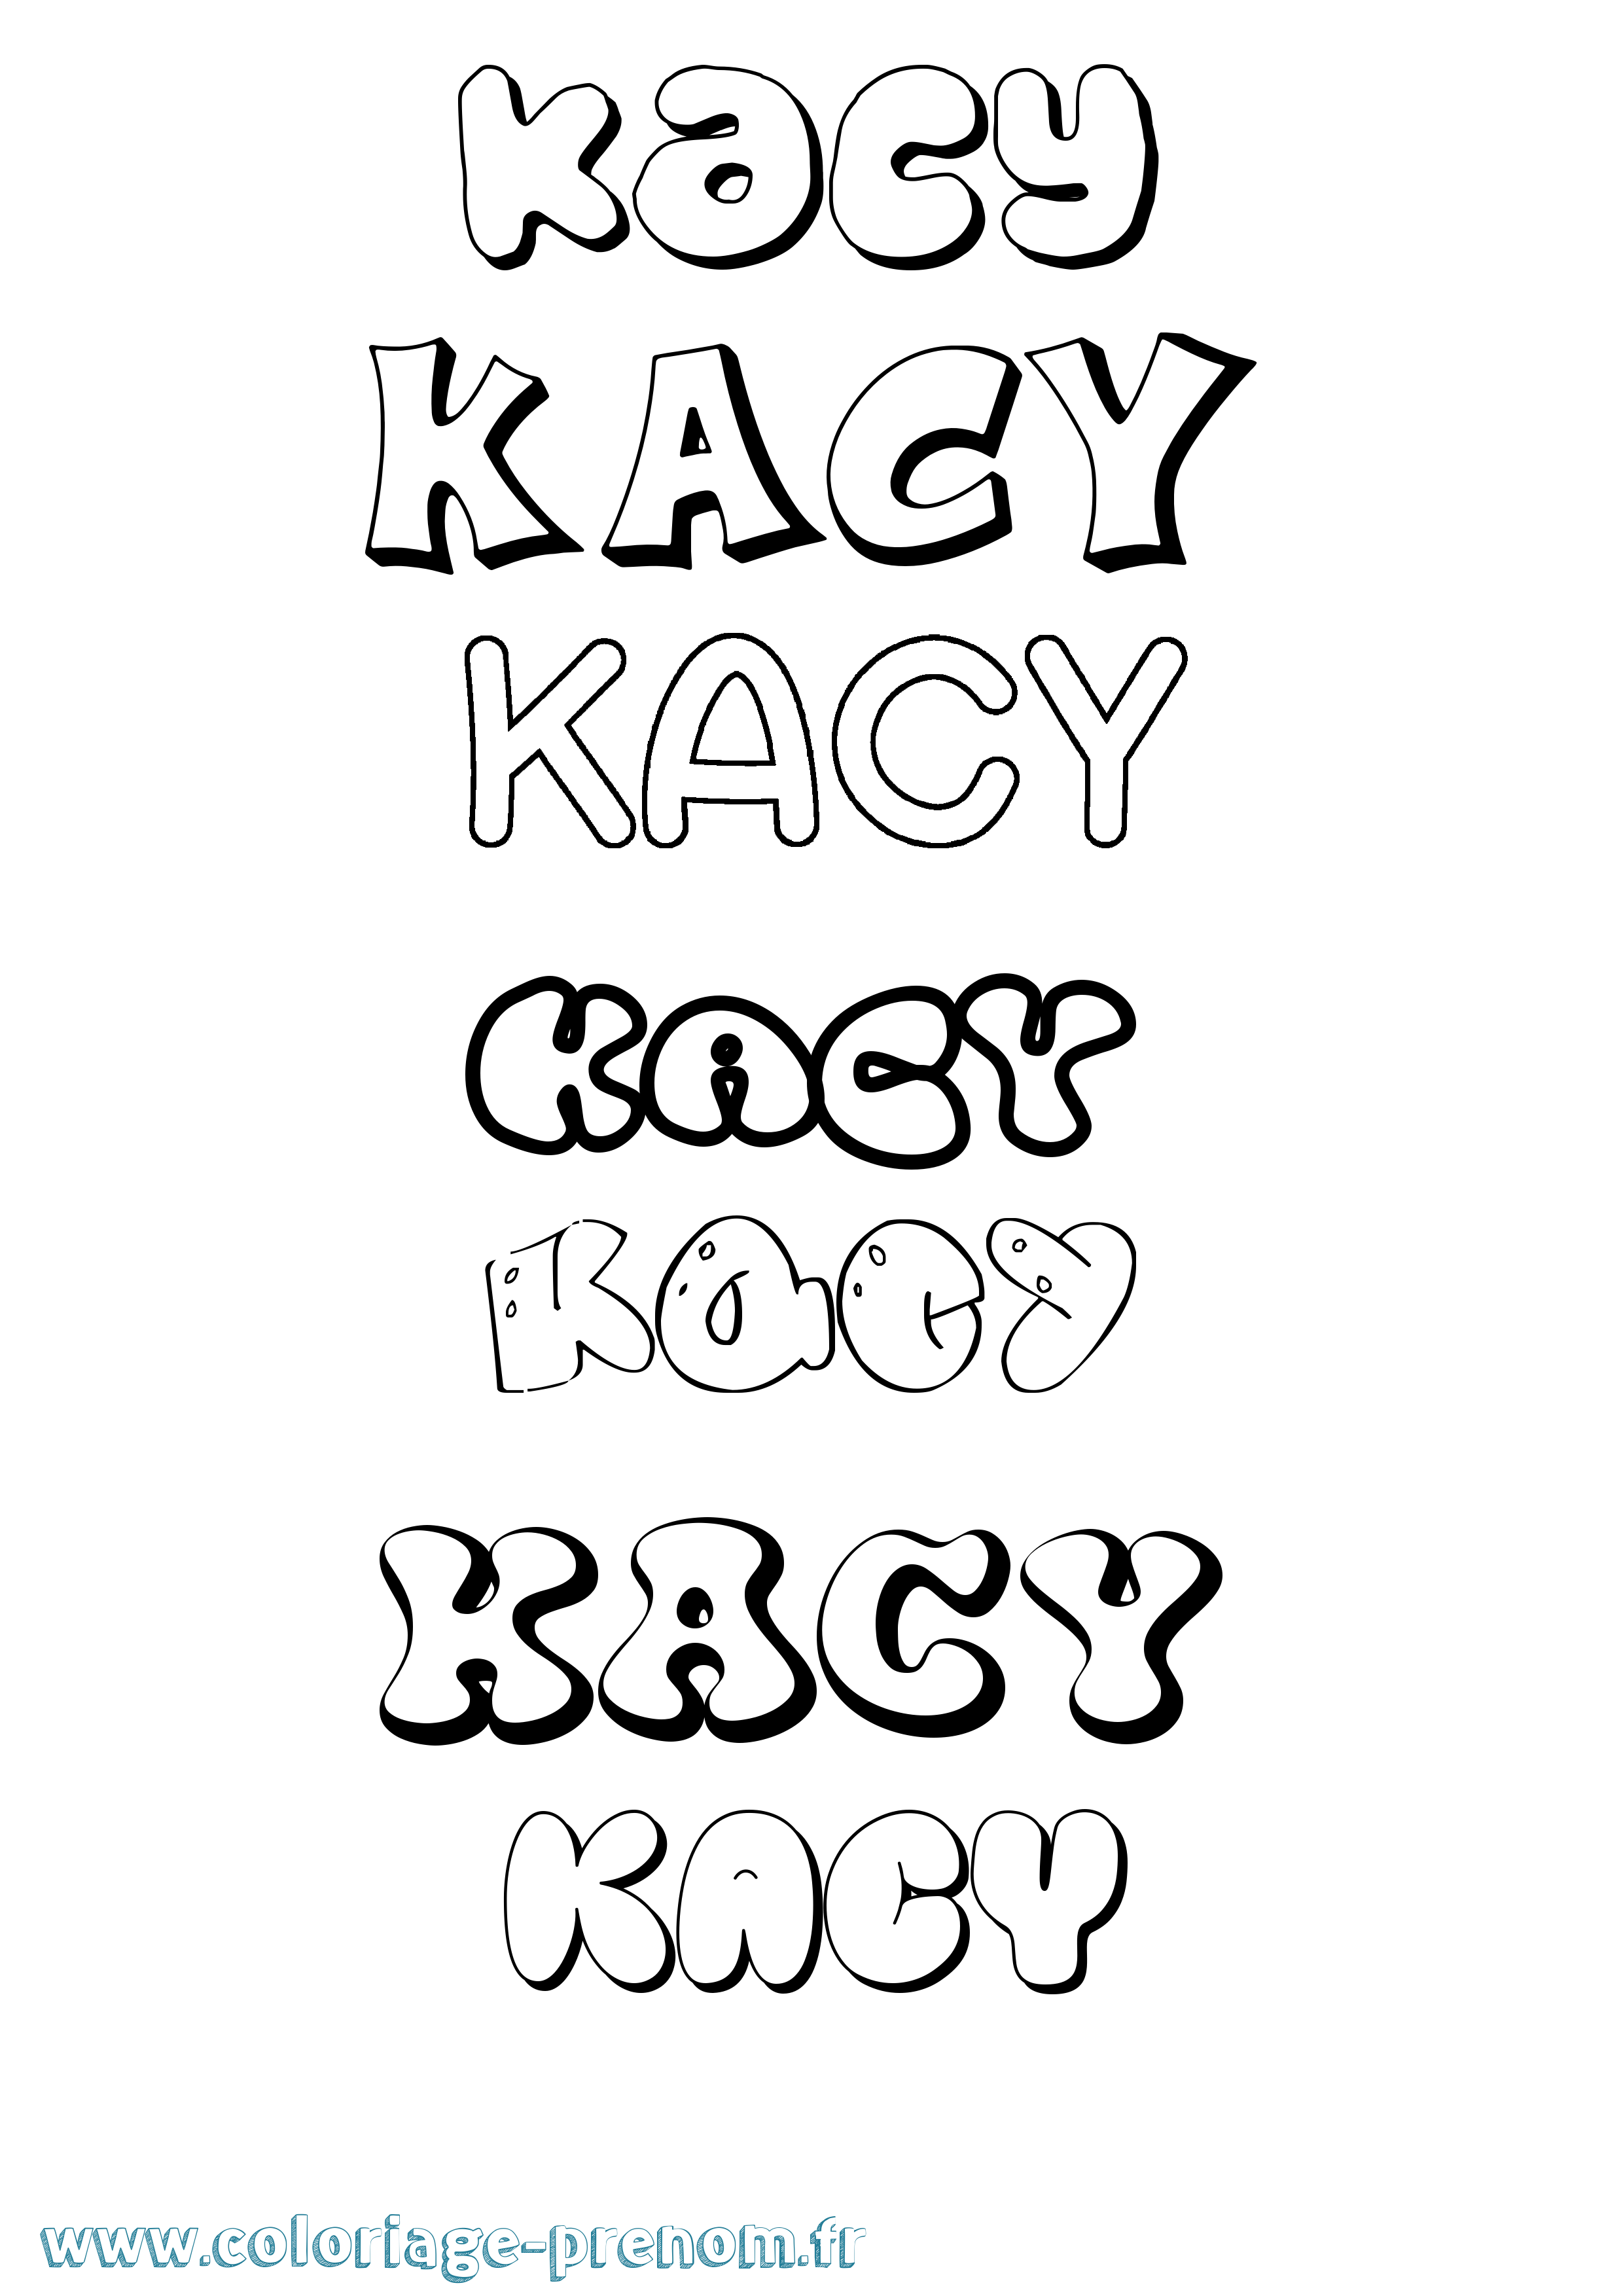 Coloriage prénom Kacy Bubble